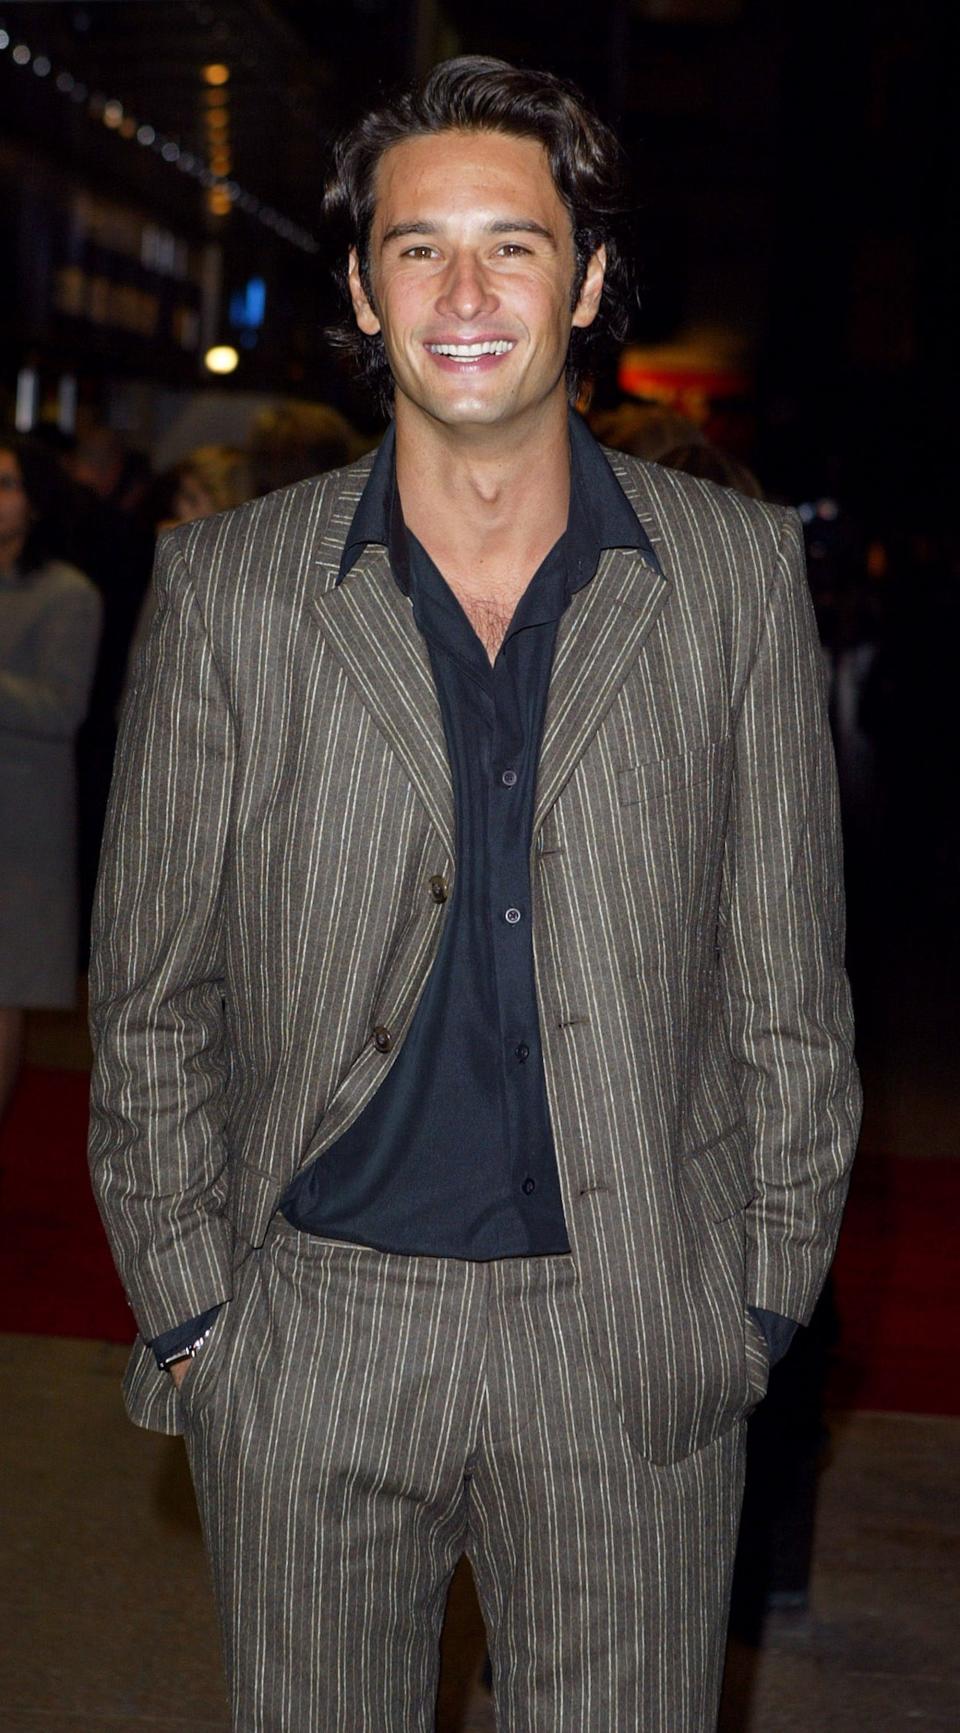 Rodrigo Santoro Attends The 'Love Actually' Premiere In London.